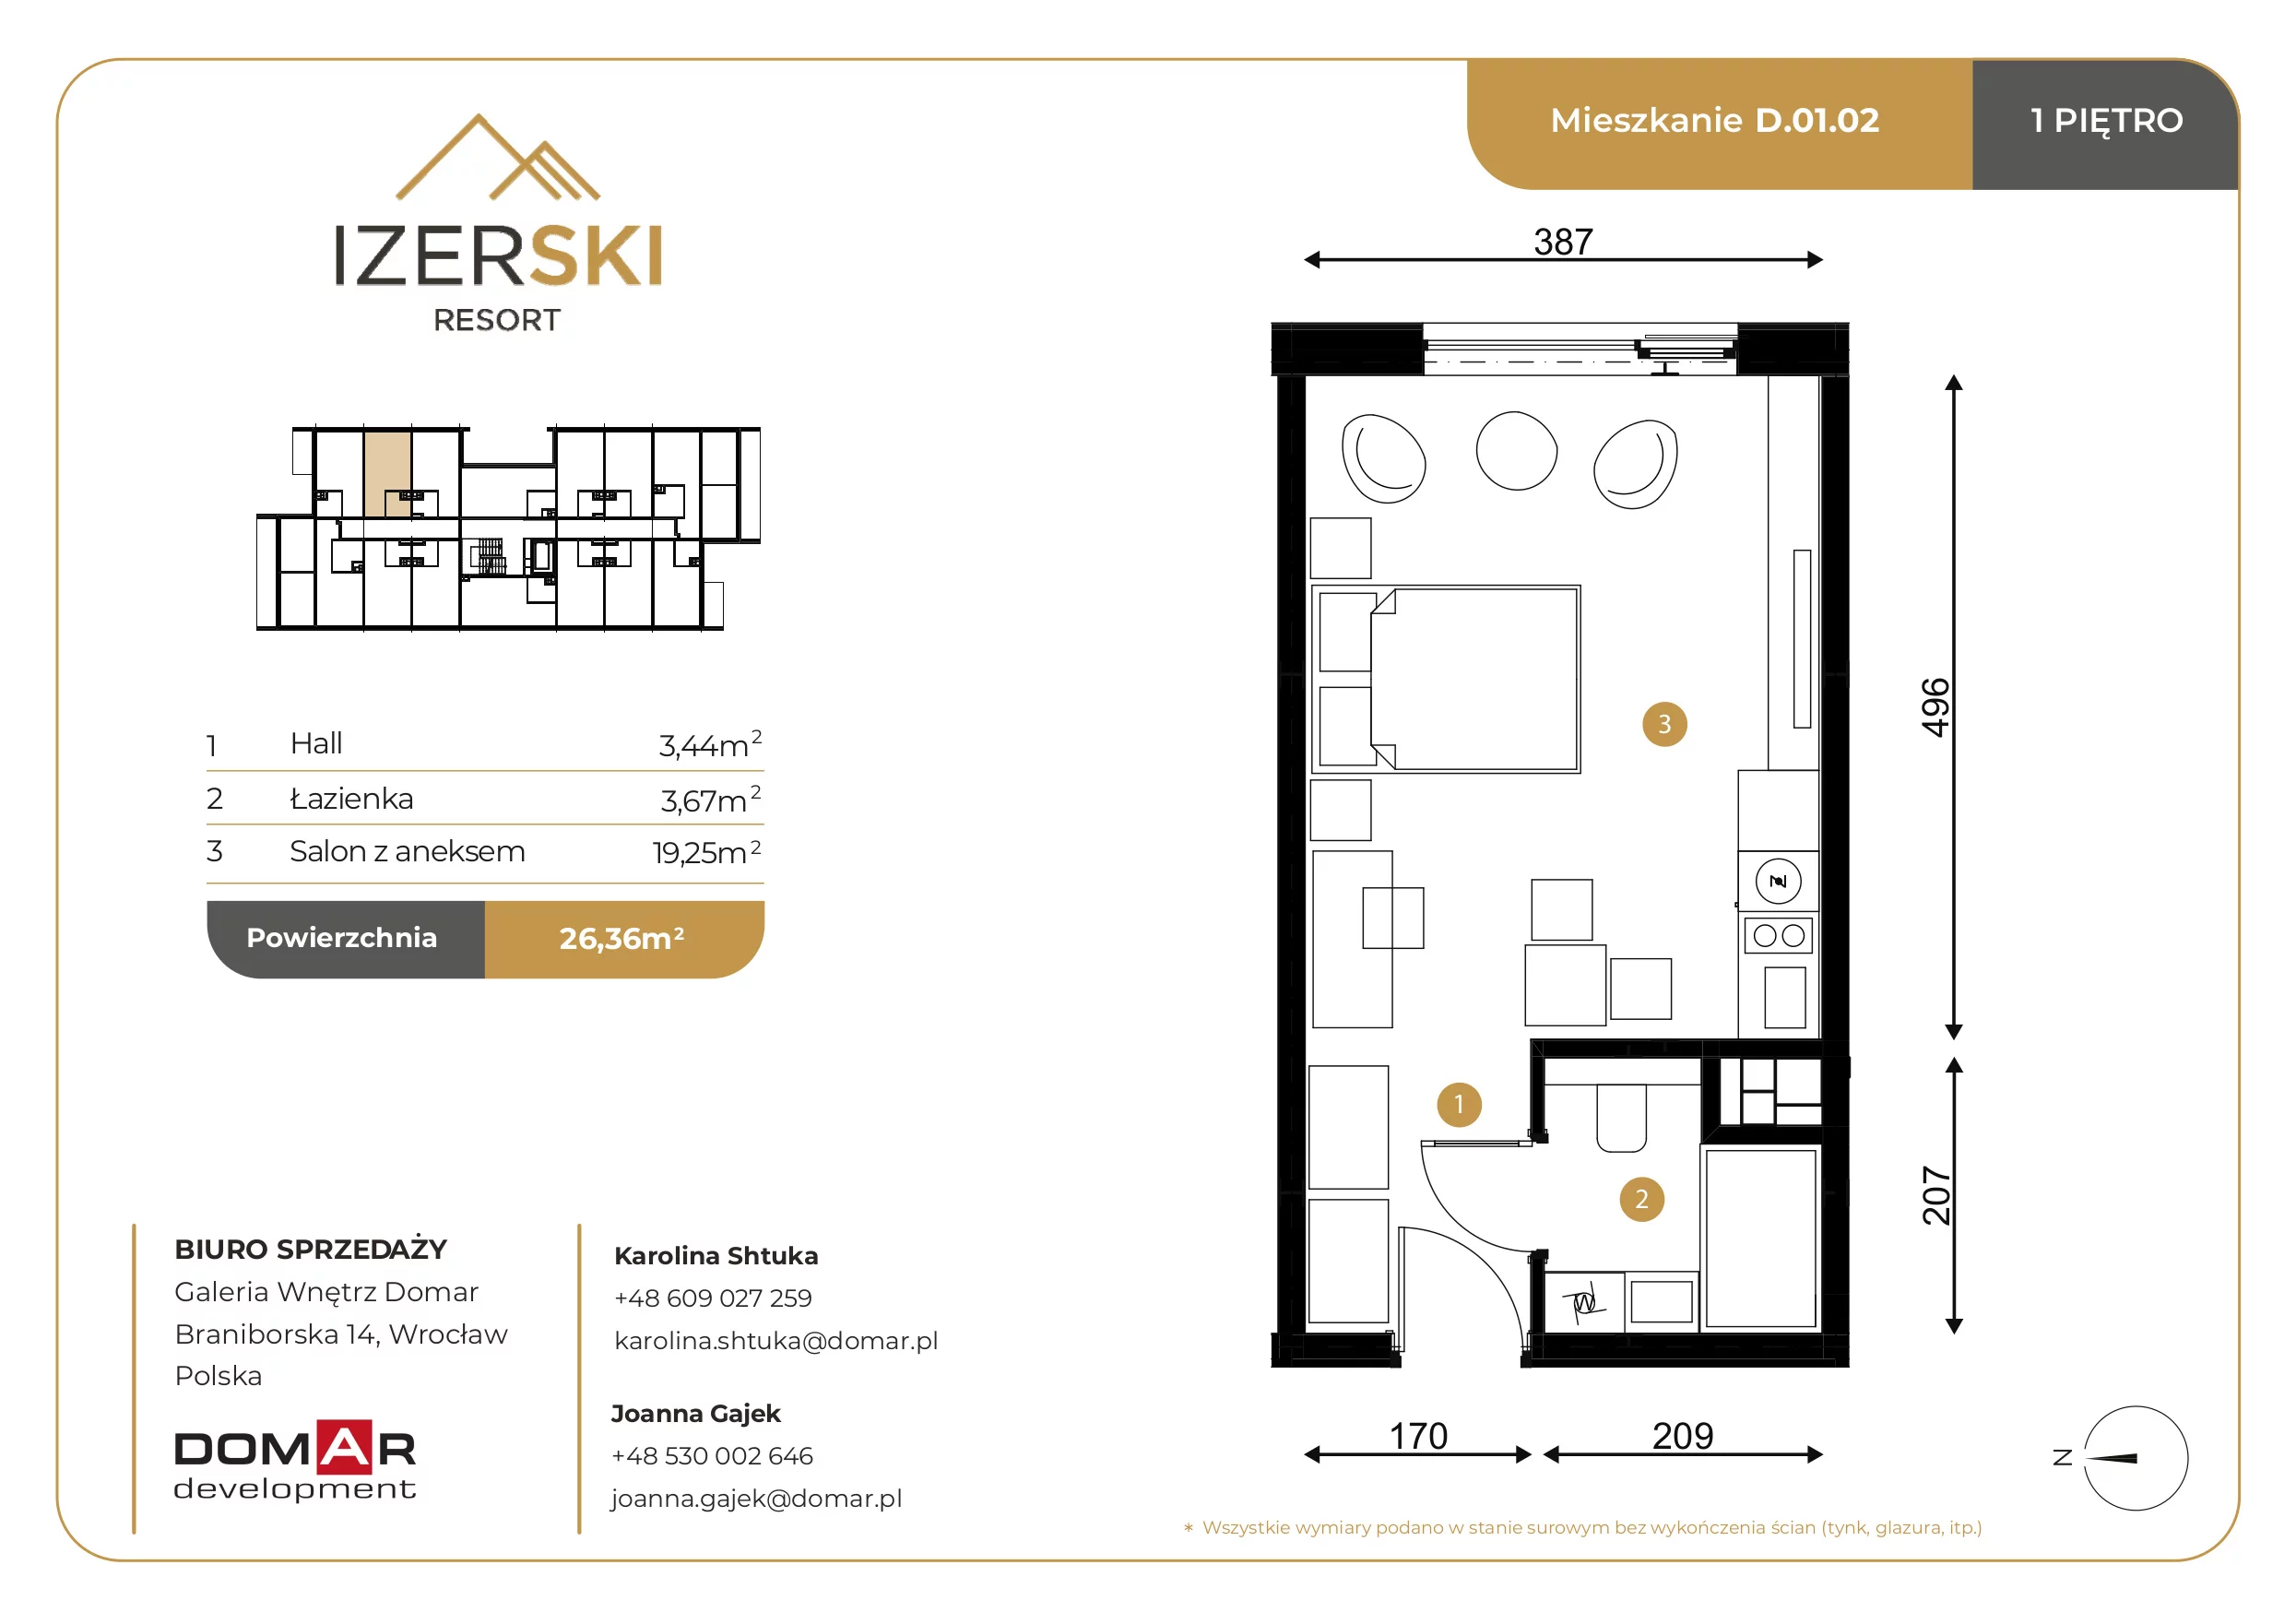 Apartament inwestycyjny 26,37 m², piętro 1, oferta nr D.01.02, IzerSKI Resort, Świeradów-Zdrój, ul. Jana Kilińskiego 2